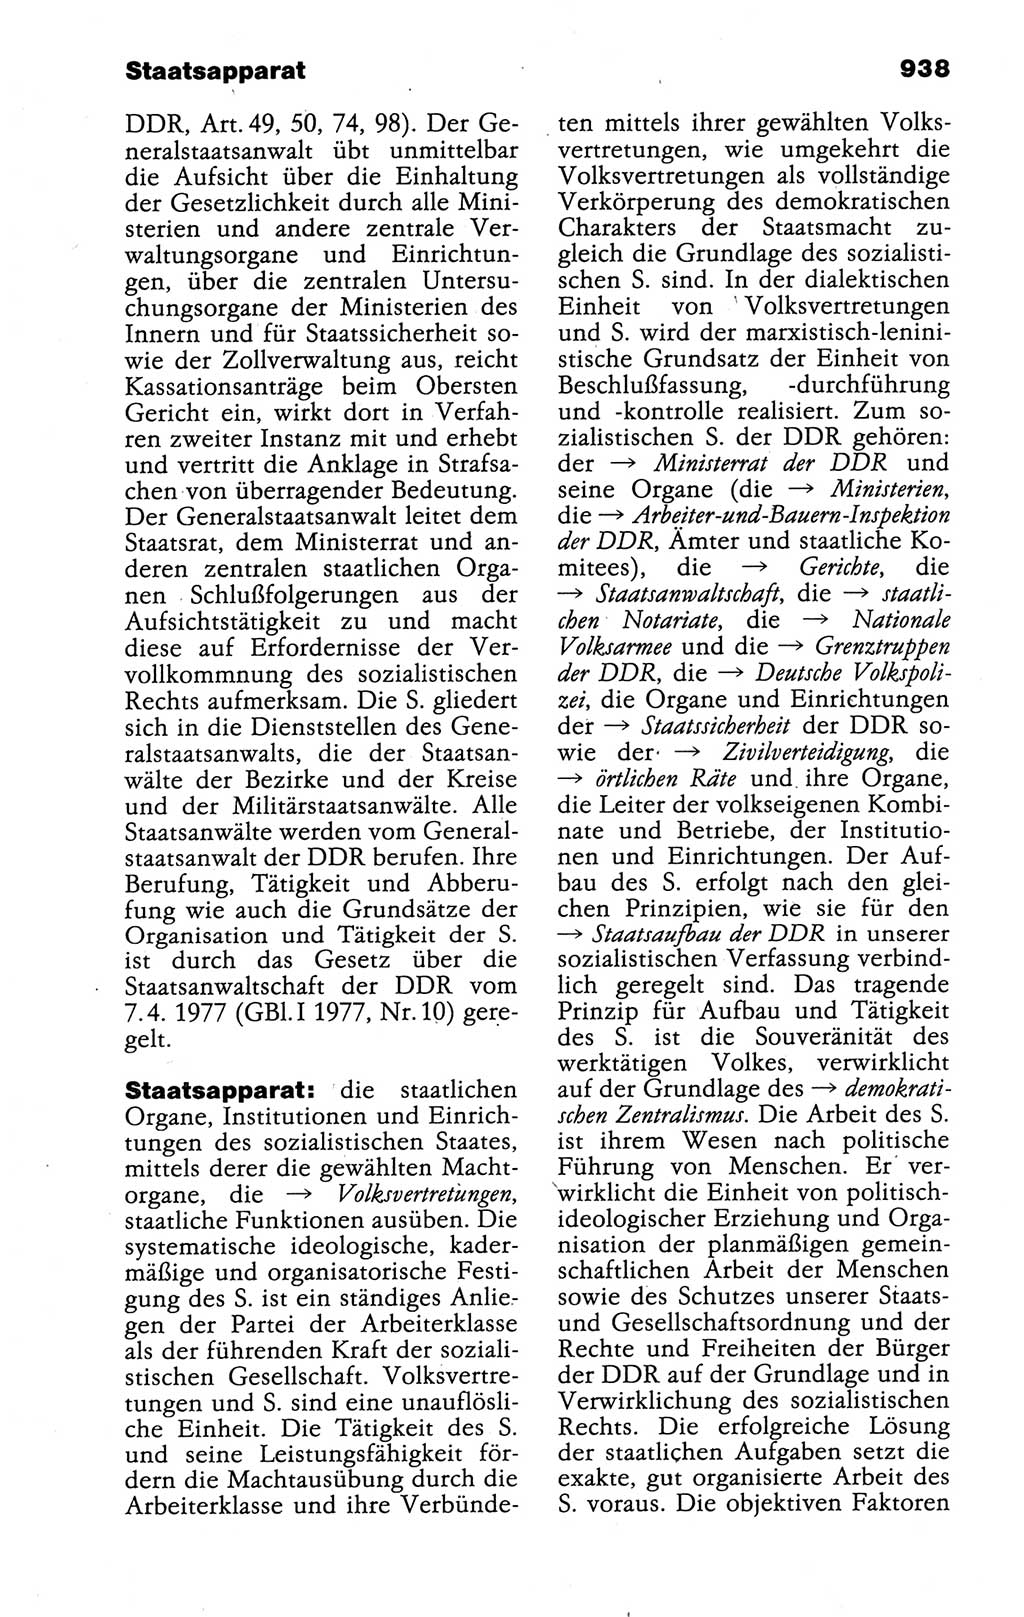 Kleines politisches Wörterbuch [Deutsche Demokratische Republik (DDR)] 1988, Seite 938 (Kl. pol. Wb. DDR 1988, S. 938)